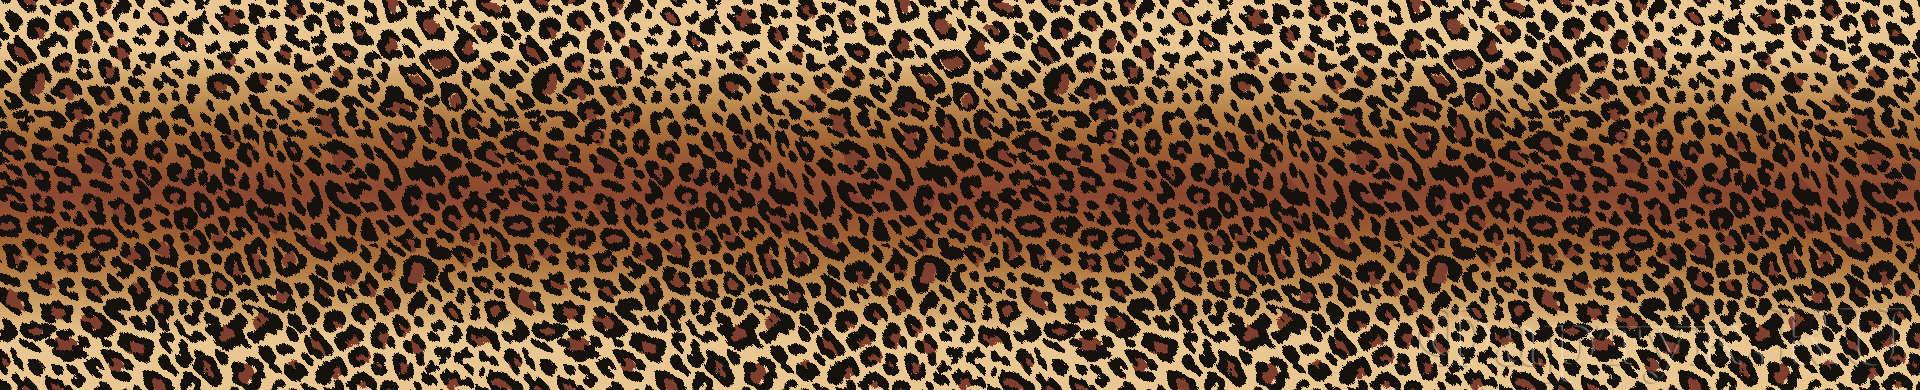 текстура шкуры гепарда